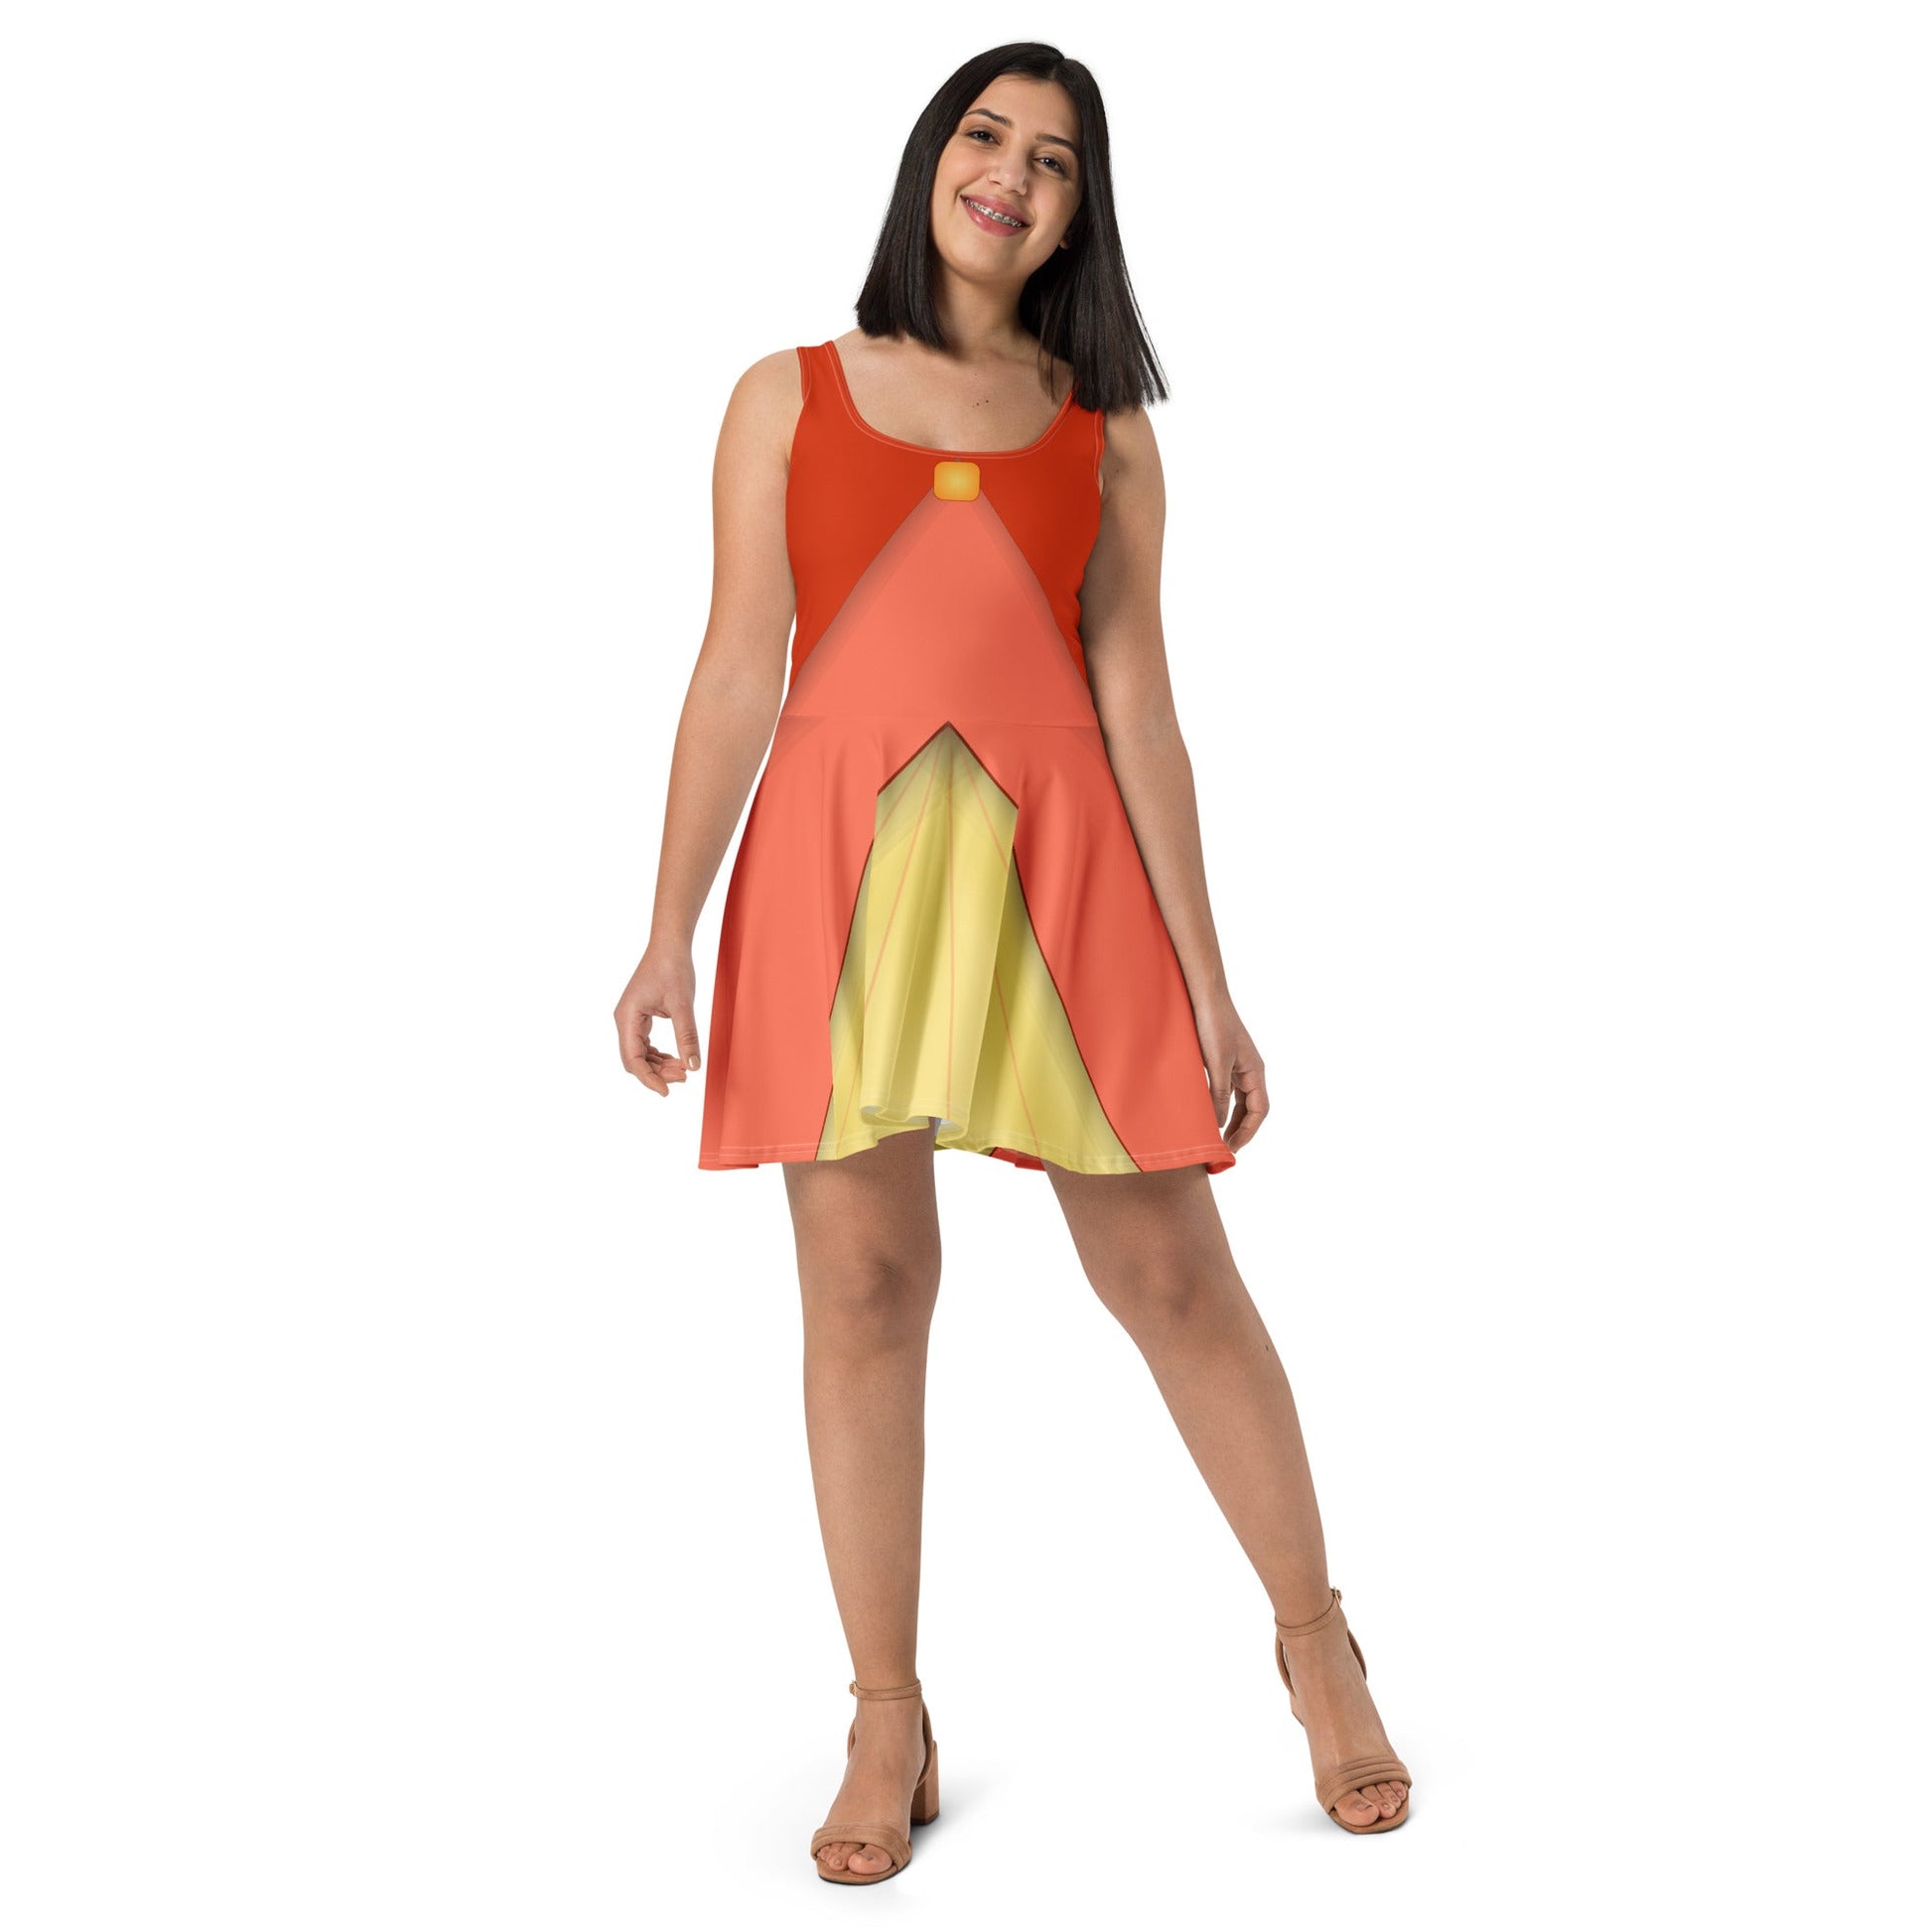 The Flora Skater Dress adult disneyadult dress upSkater SkirtWrong Lever Clothing